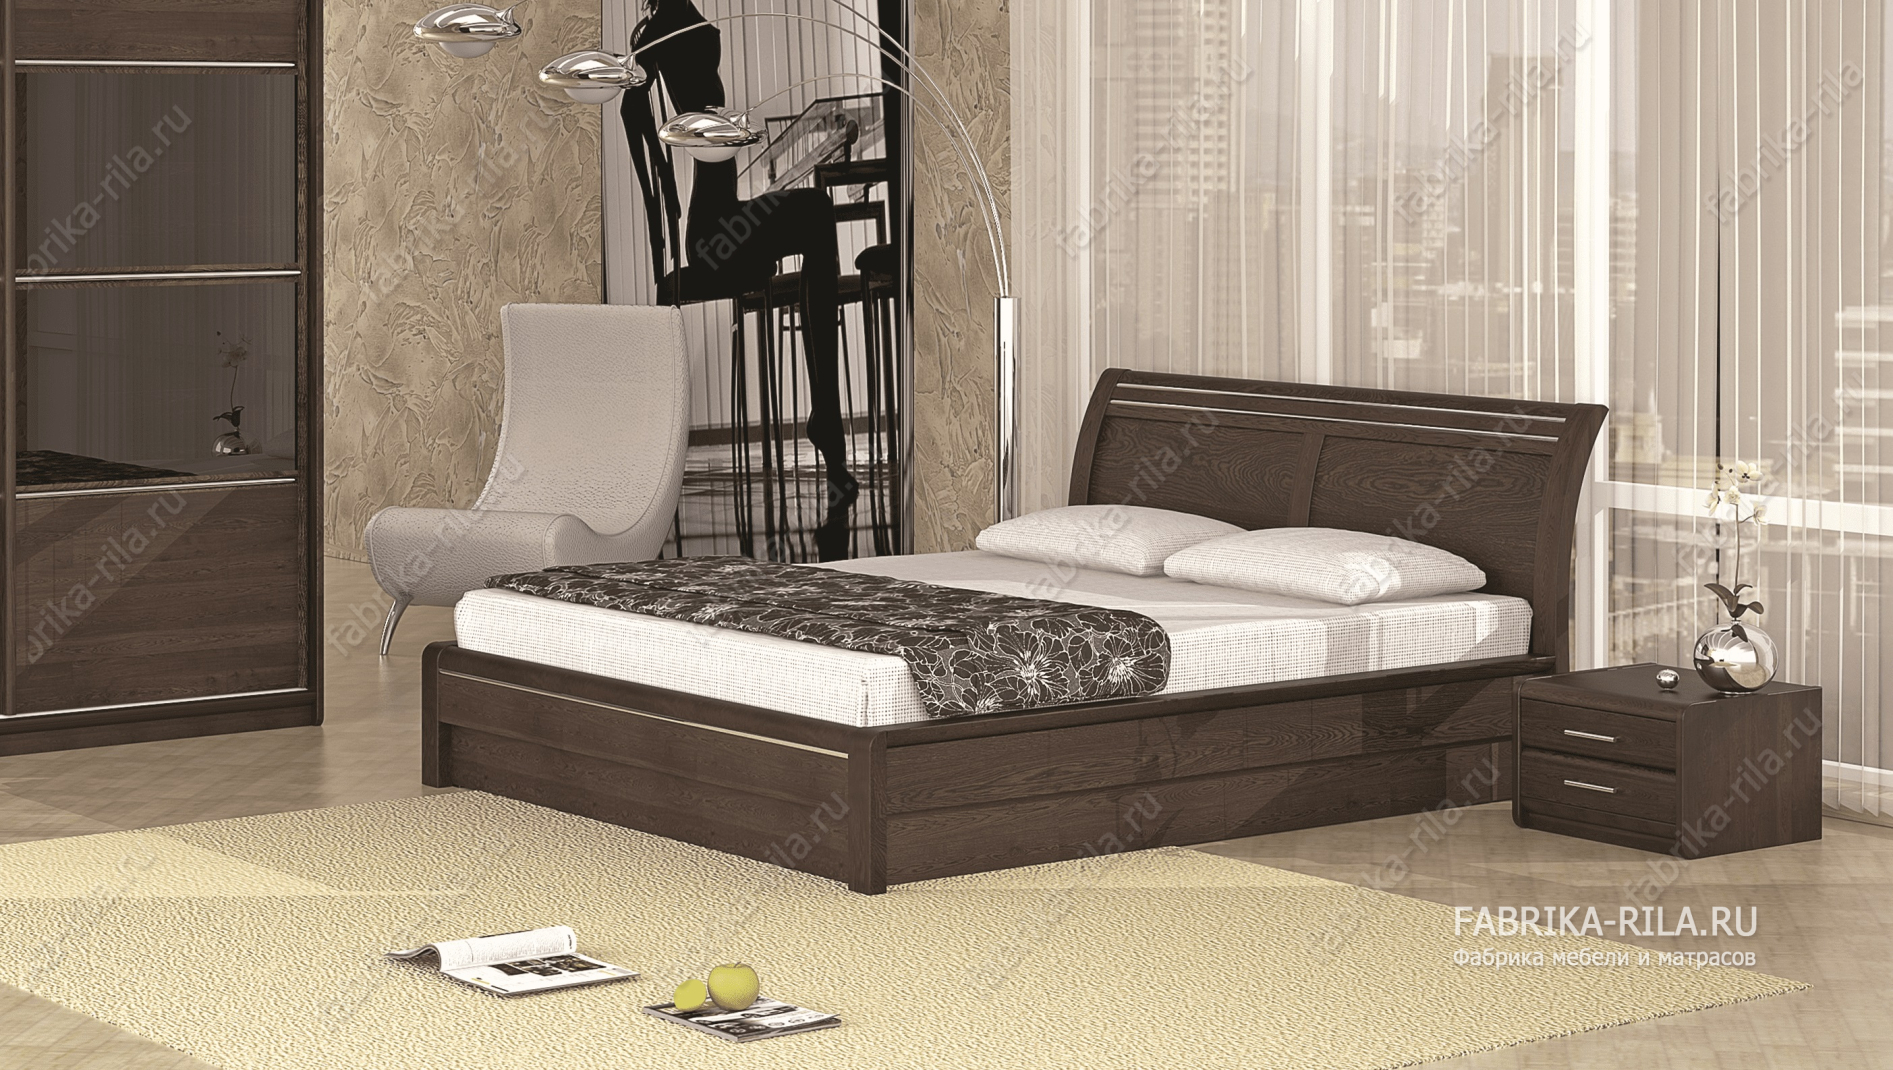 Кровать Okaeri 2 — 90x190 см. из березы